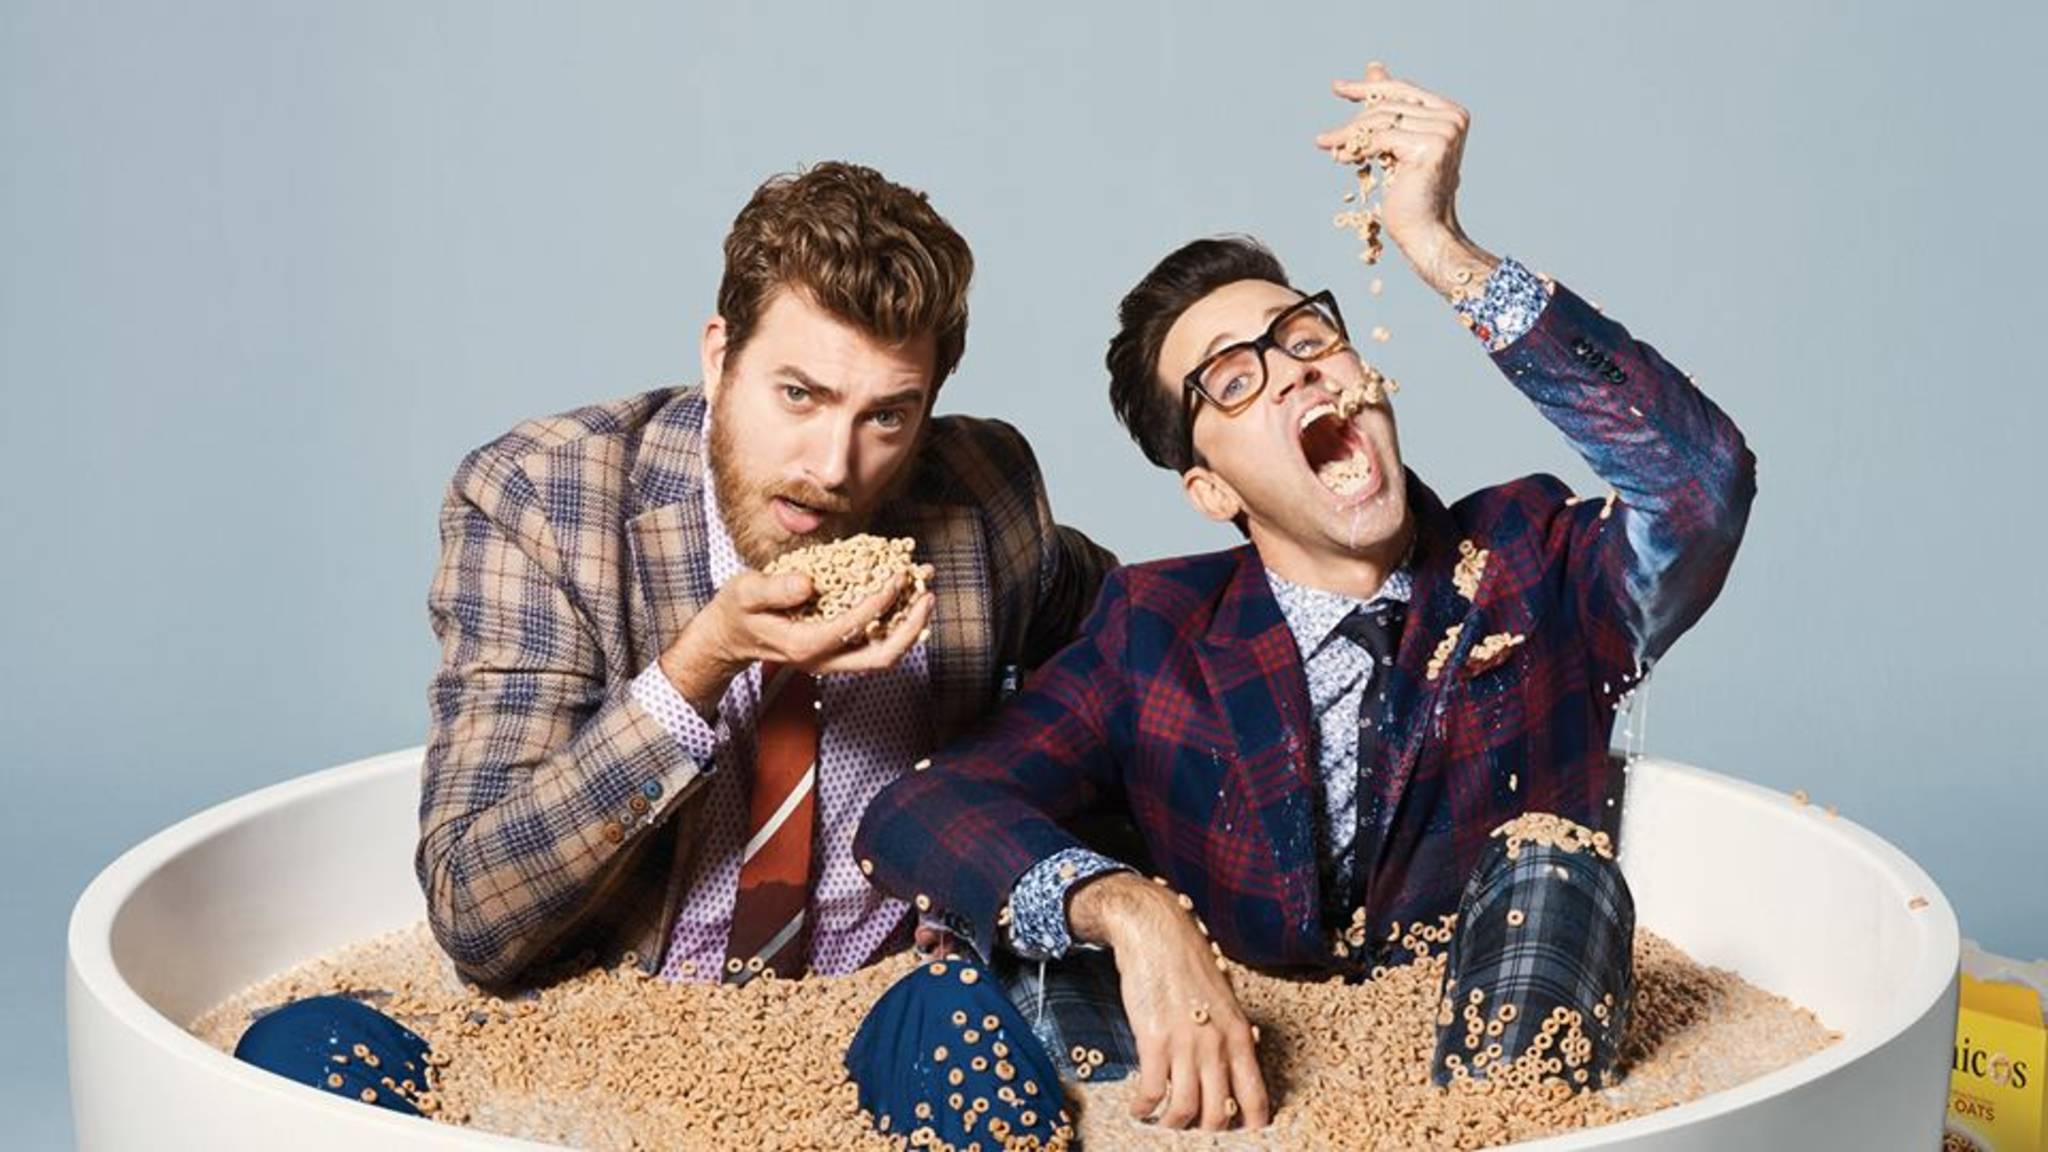 Rhett and Link in Toronto 2048x1152